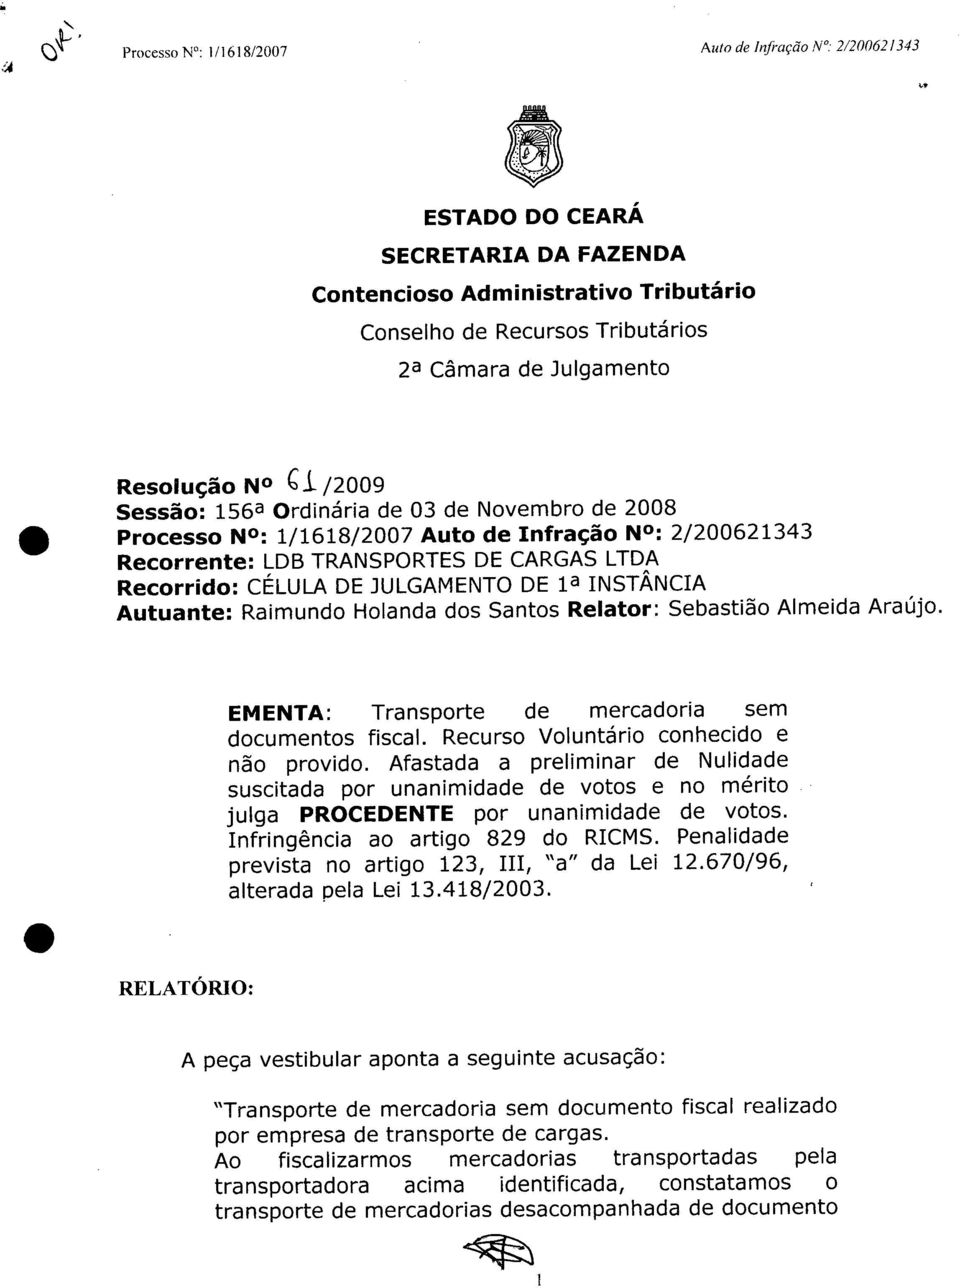 2008 Processo N0: 1/1618/2007 Auto de Infração N : 2/200621343 Recorrente: LDS TRANSPORTES DE CARGAS LTDA Recorrido: CÉLULA DE JULGAMENTO DE 1a INSTÂNCIA Autuante: Raimundo Holanda dos Santos